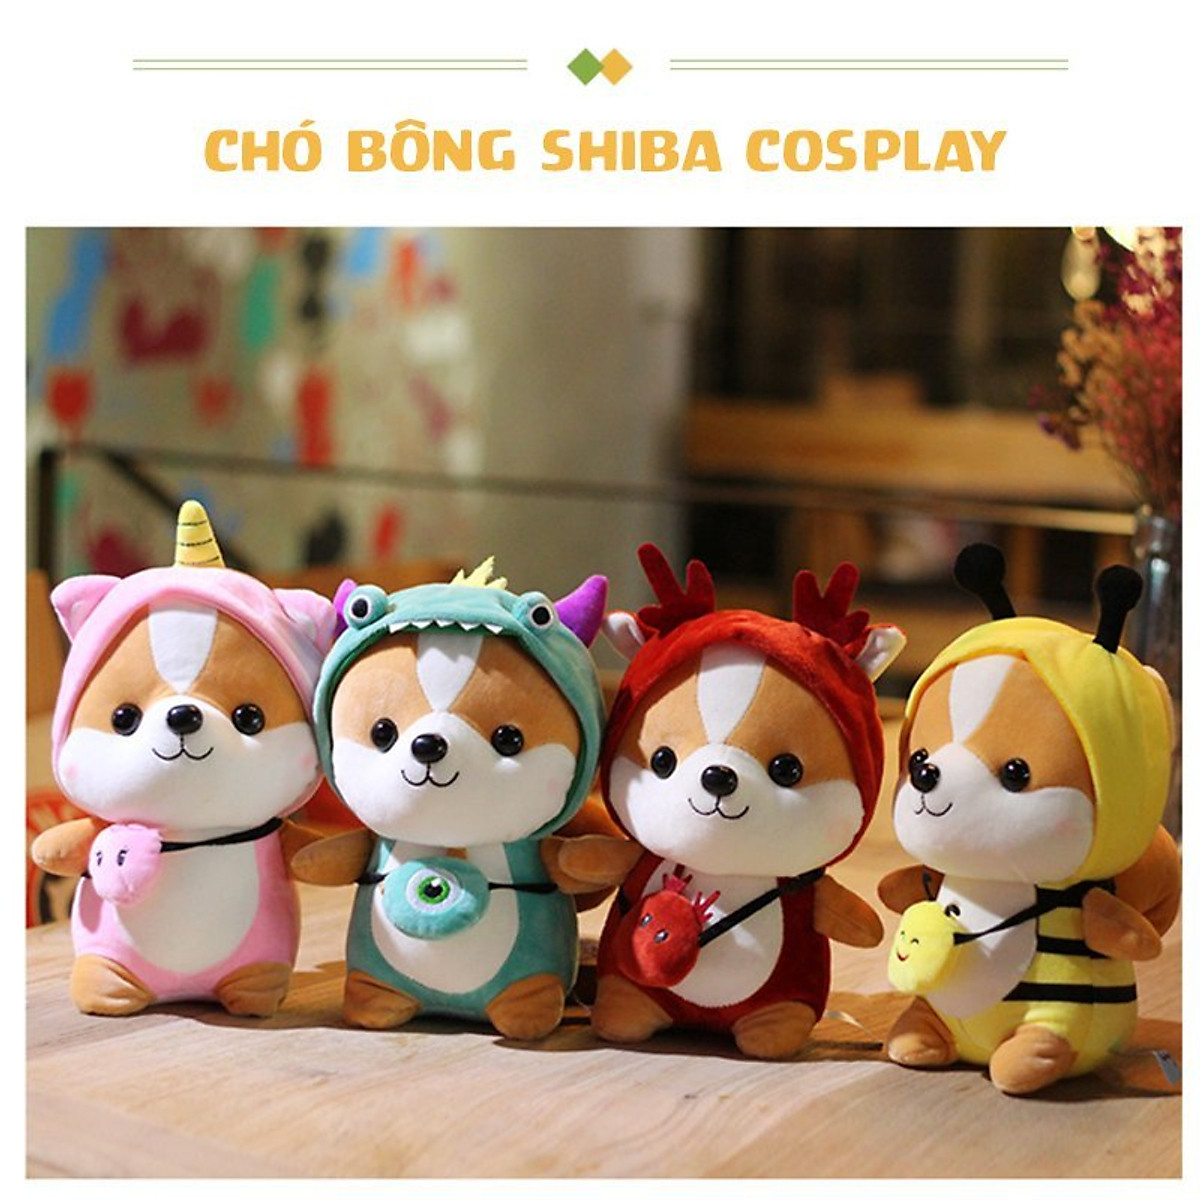 Mua Ngay Gấu bông chó Shiba cosplay 25cm cao cấp - Hàng chính hãng Memon - Đồ chơi thú nhồi bông chó Shiba cosplay